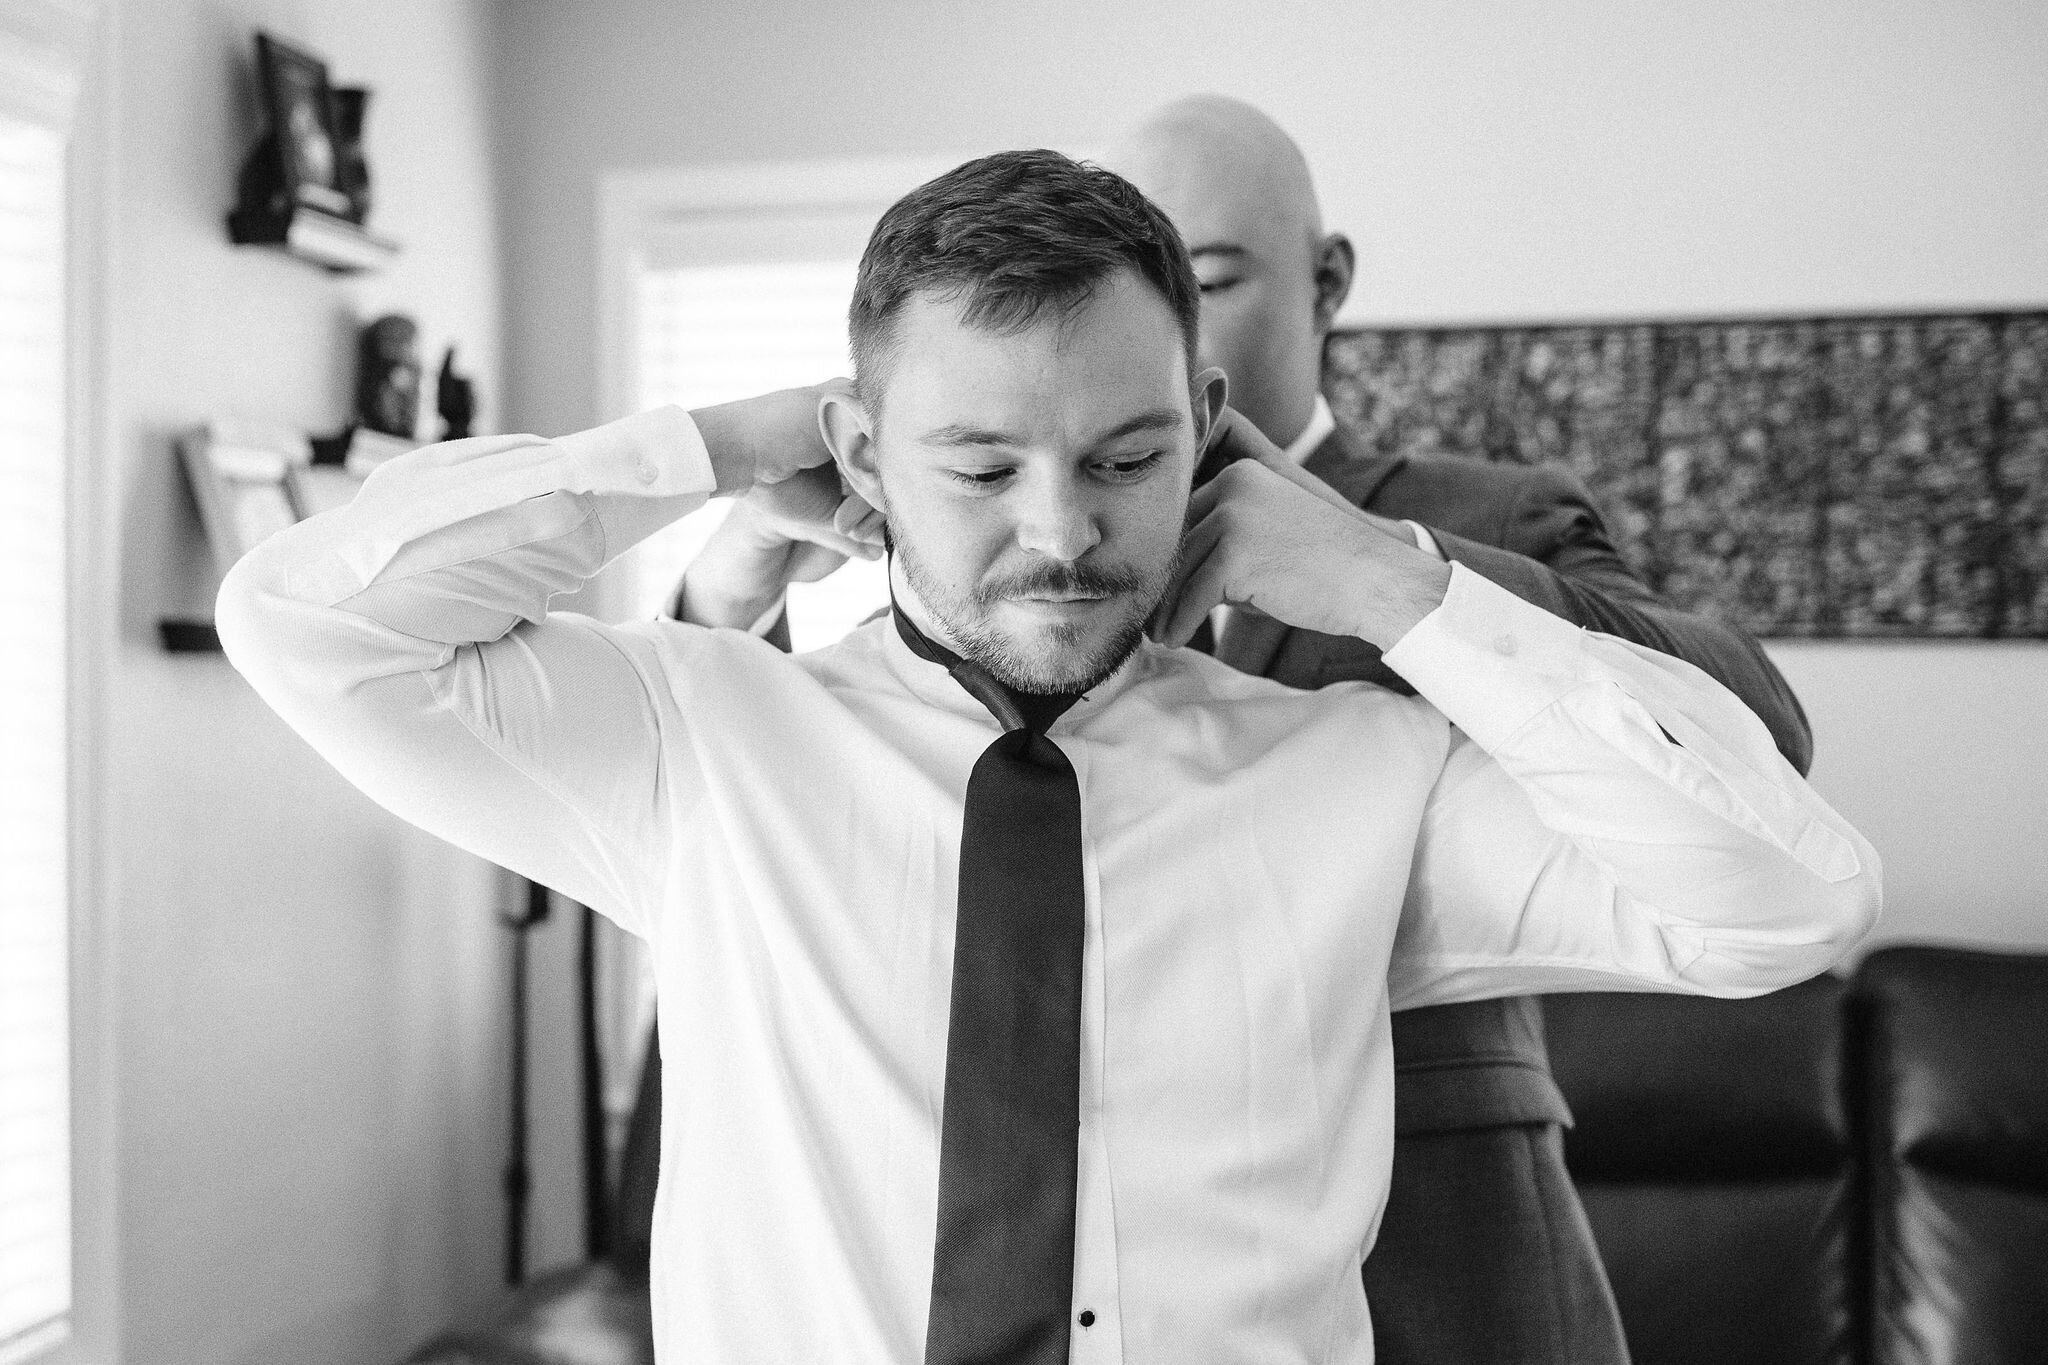 Groomsman helps groom put his tie on